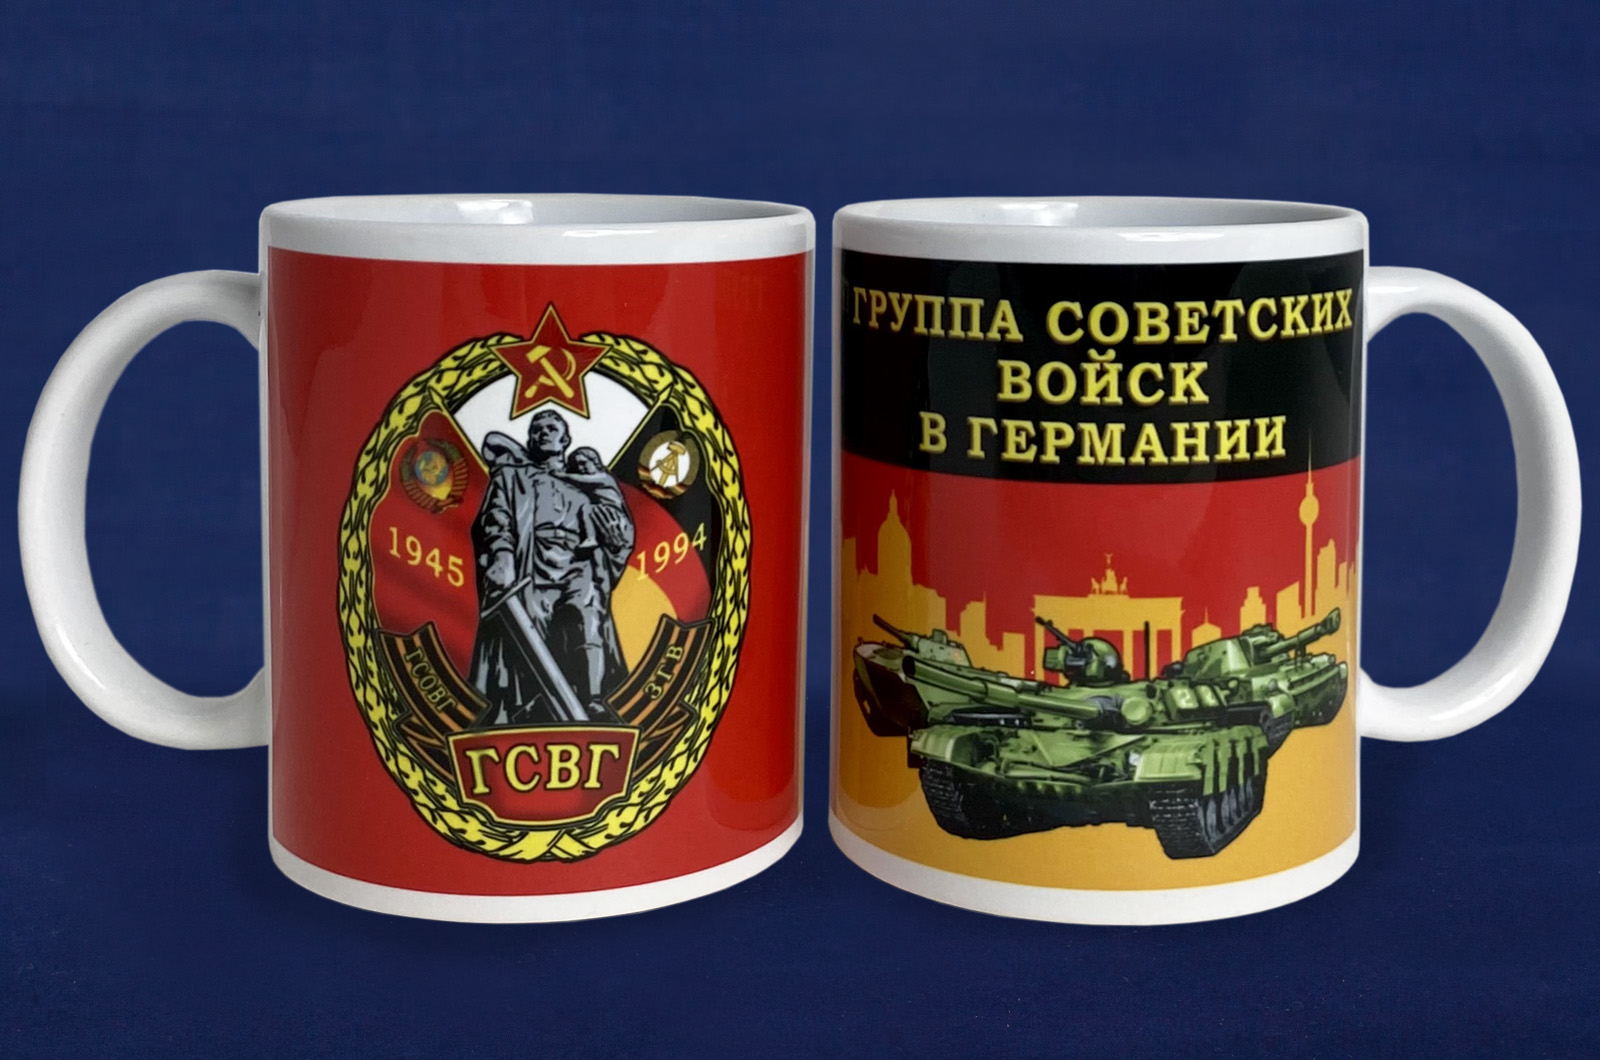 Купить кружку Группа Советских войск в Германии